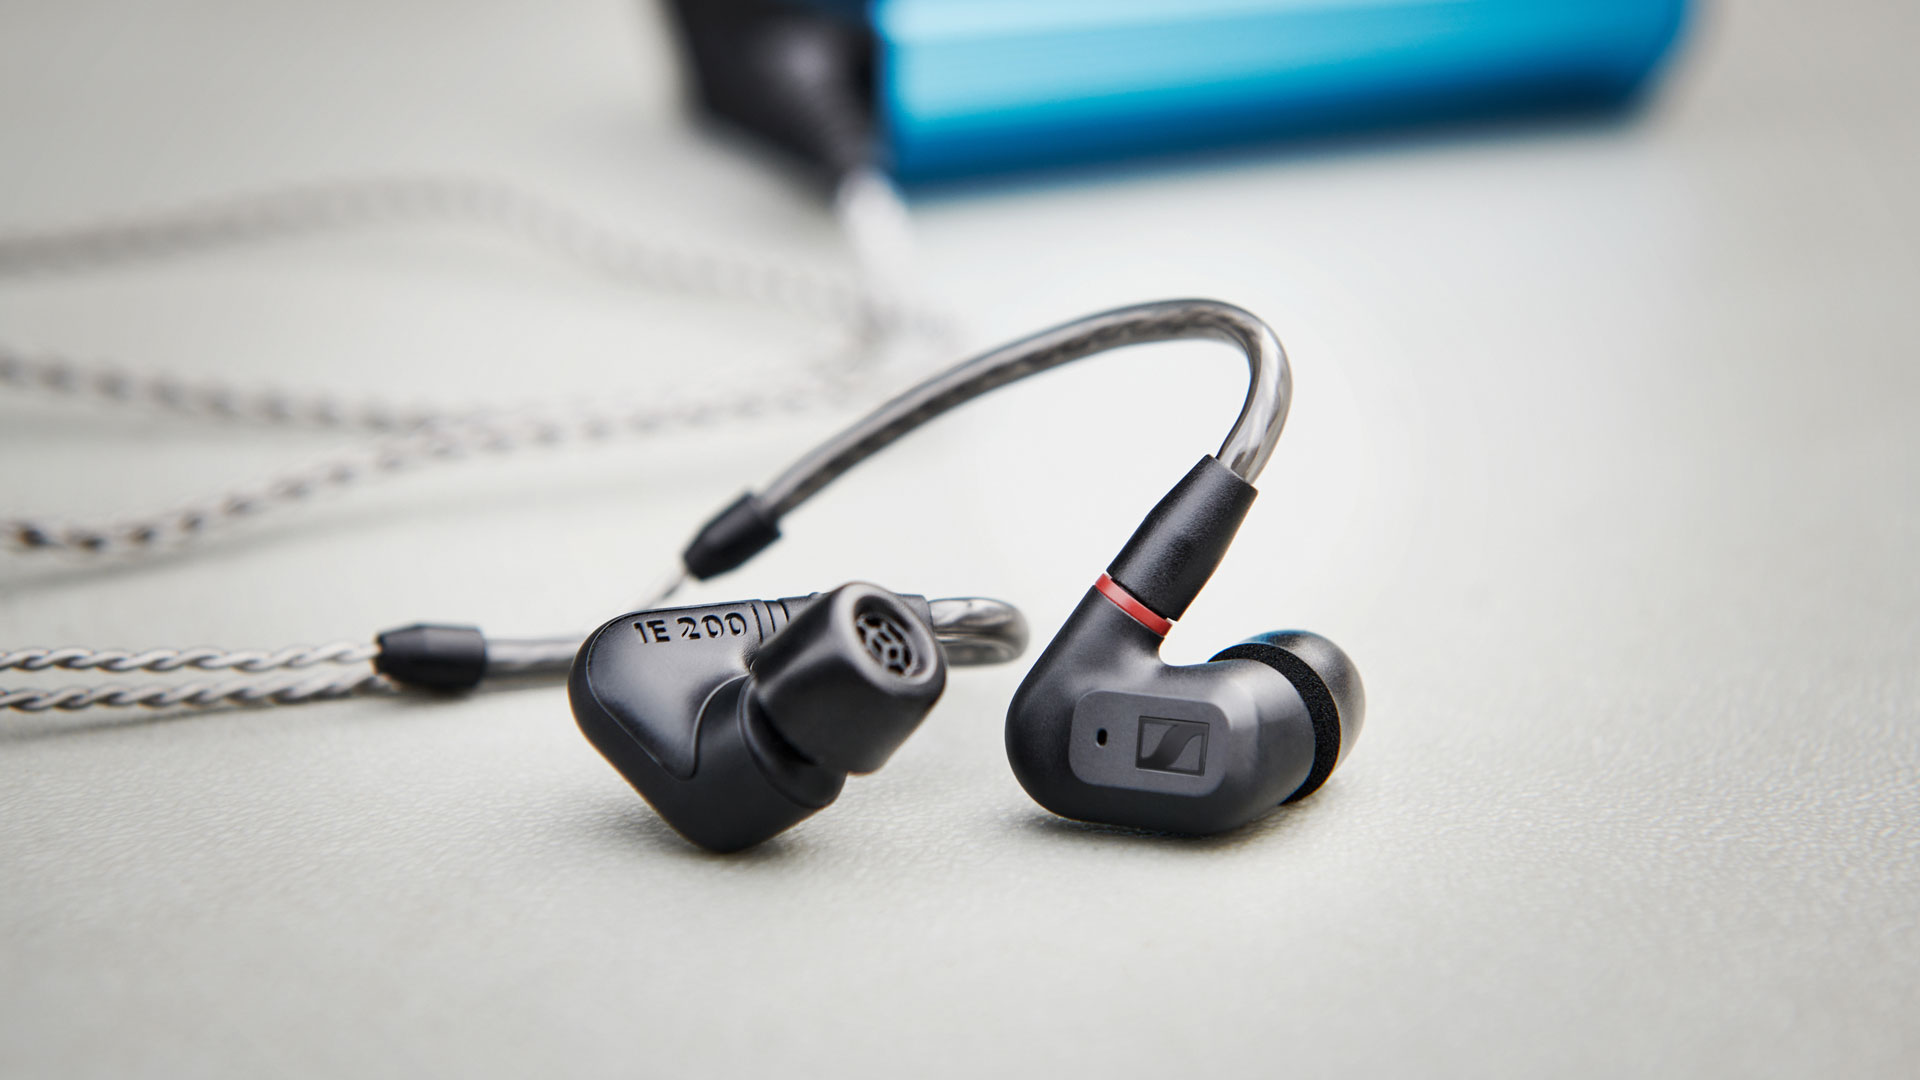 The new Sennheiser IE 200 in-ear headphones (Image Credit: Sennheiser)